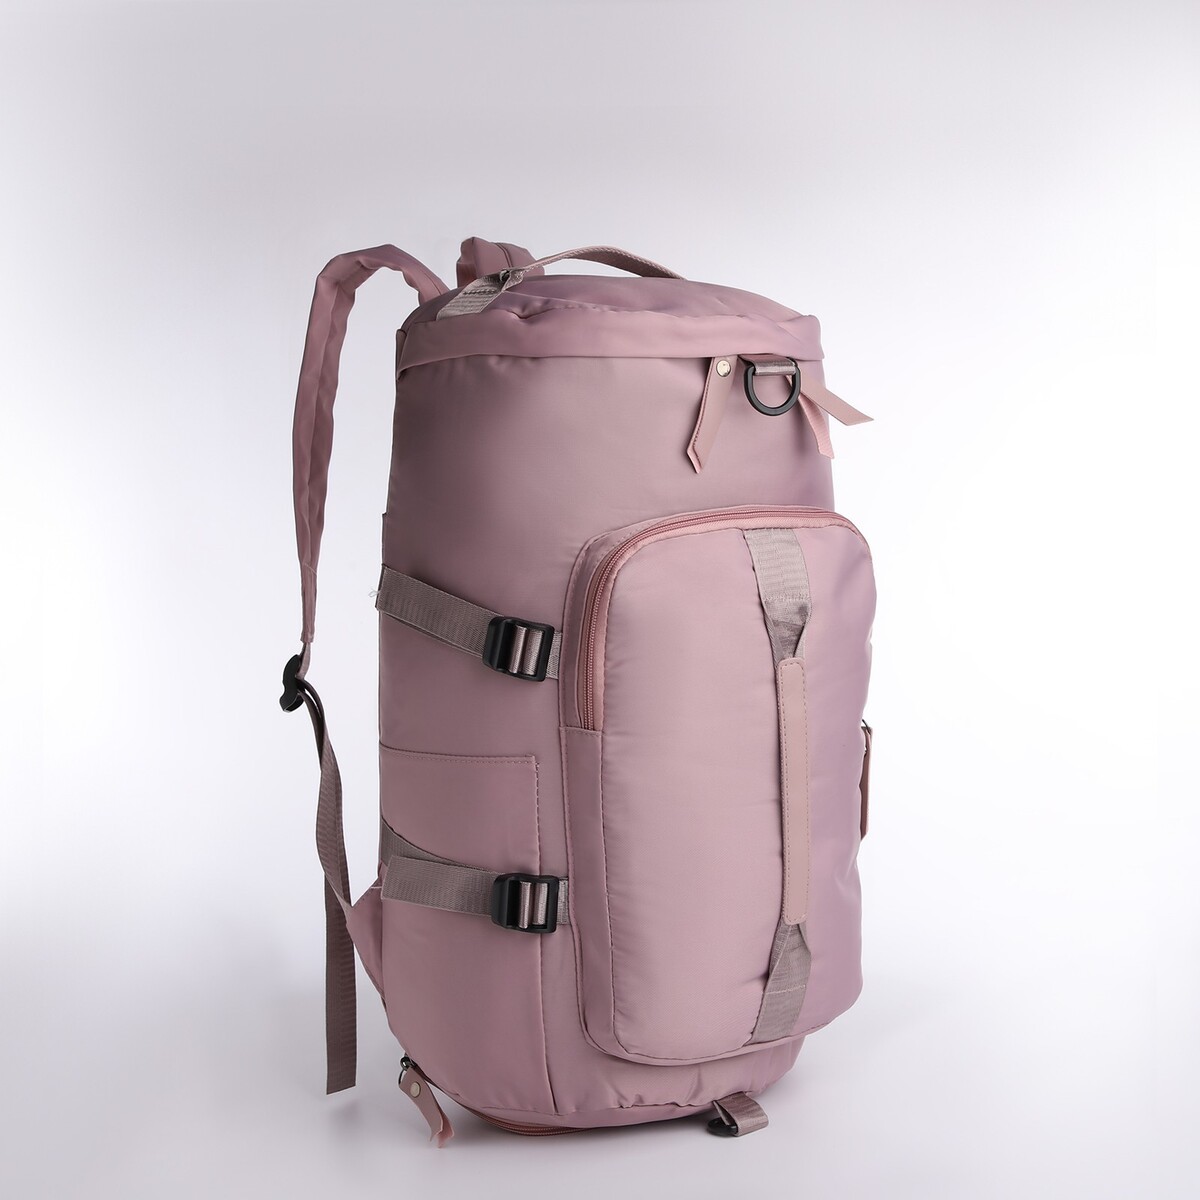 Рюкзак-сумка на молнии, 4 наружных кармана, отделение для обуви, цвет розовый рюкзак сумка на молнии 4 наружных кармана отделение для обуви зеленый